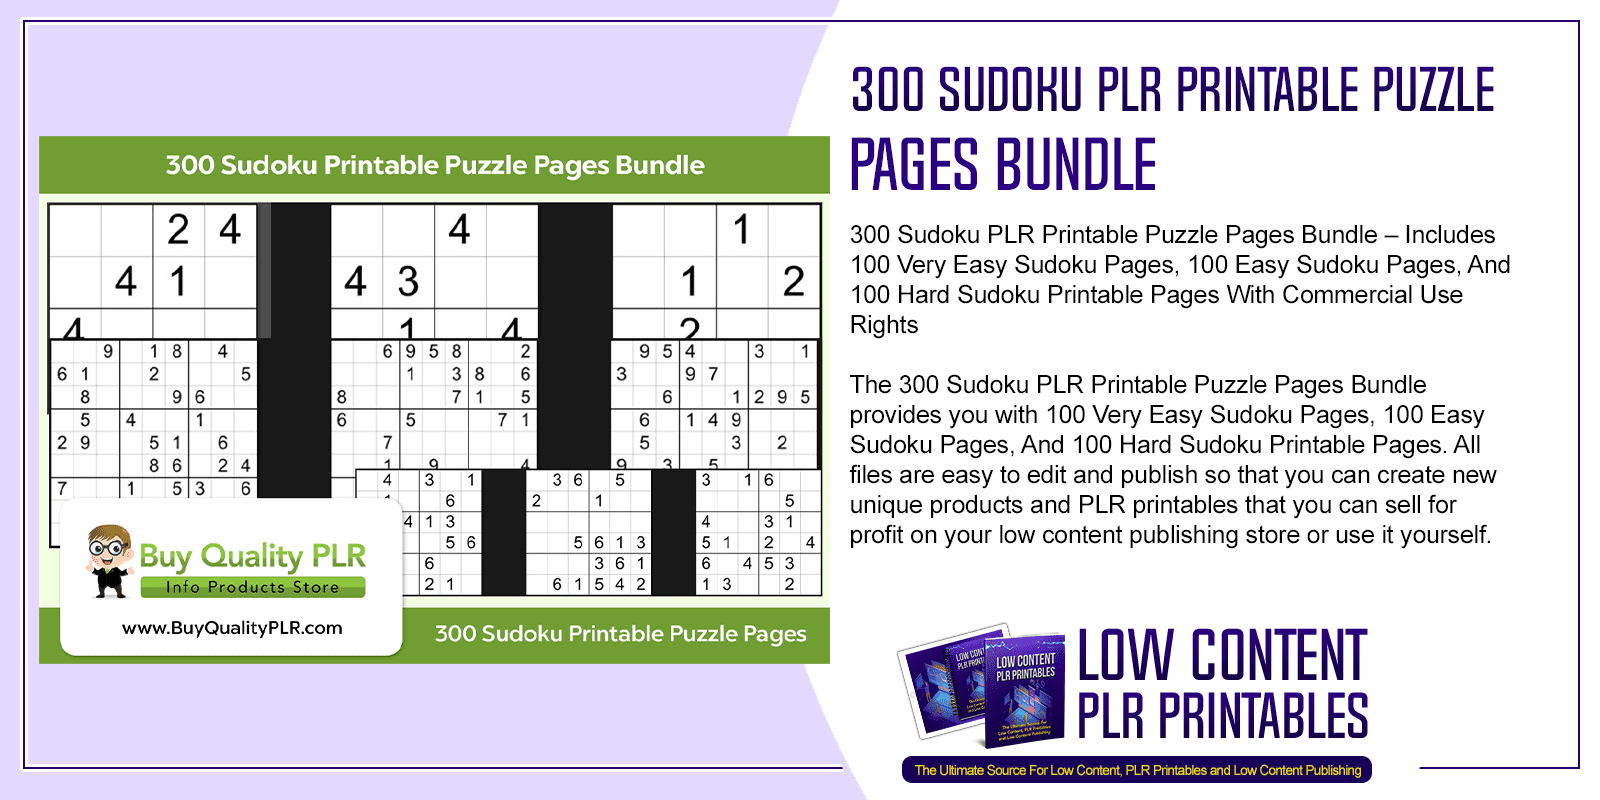 300 Sudoku PLR Printable Puzzle Pages Bundle